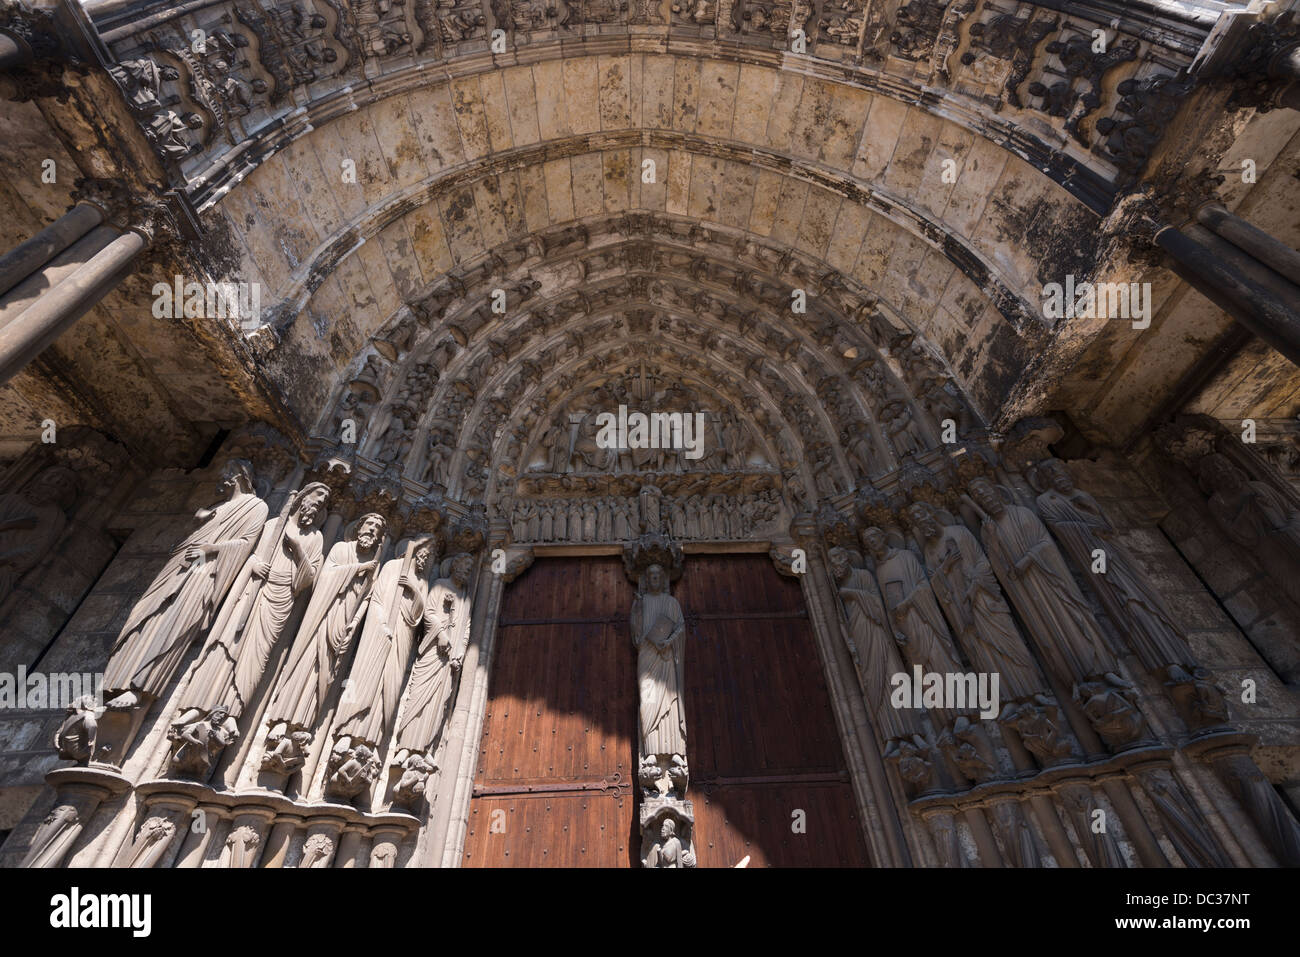 Entrée de la cathédrale gothique de Chartres, France Banque D'Images